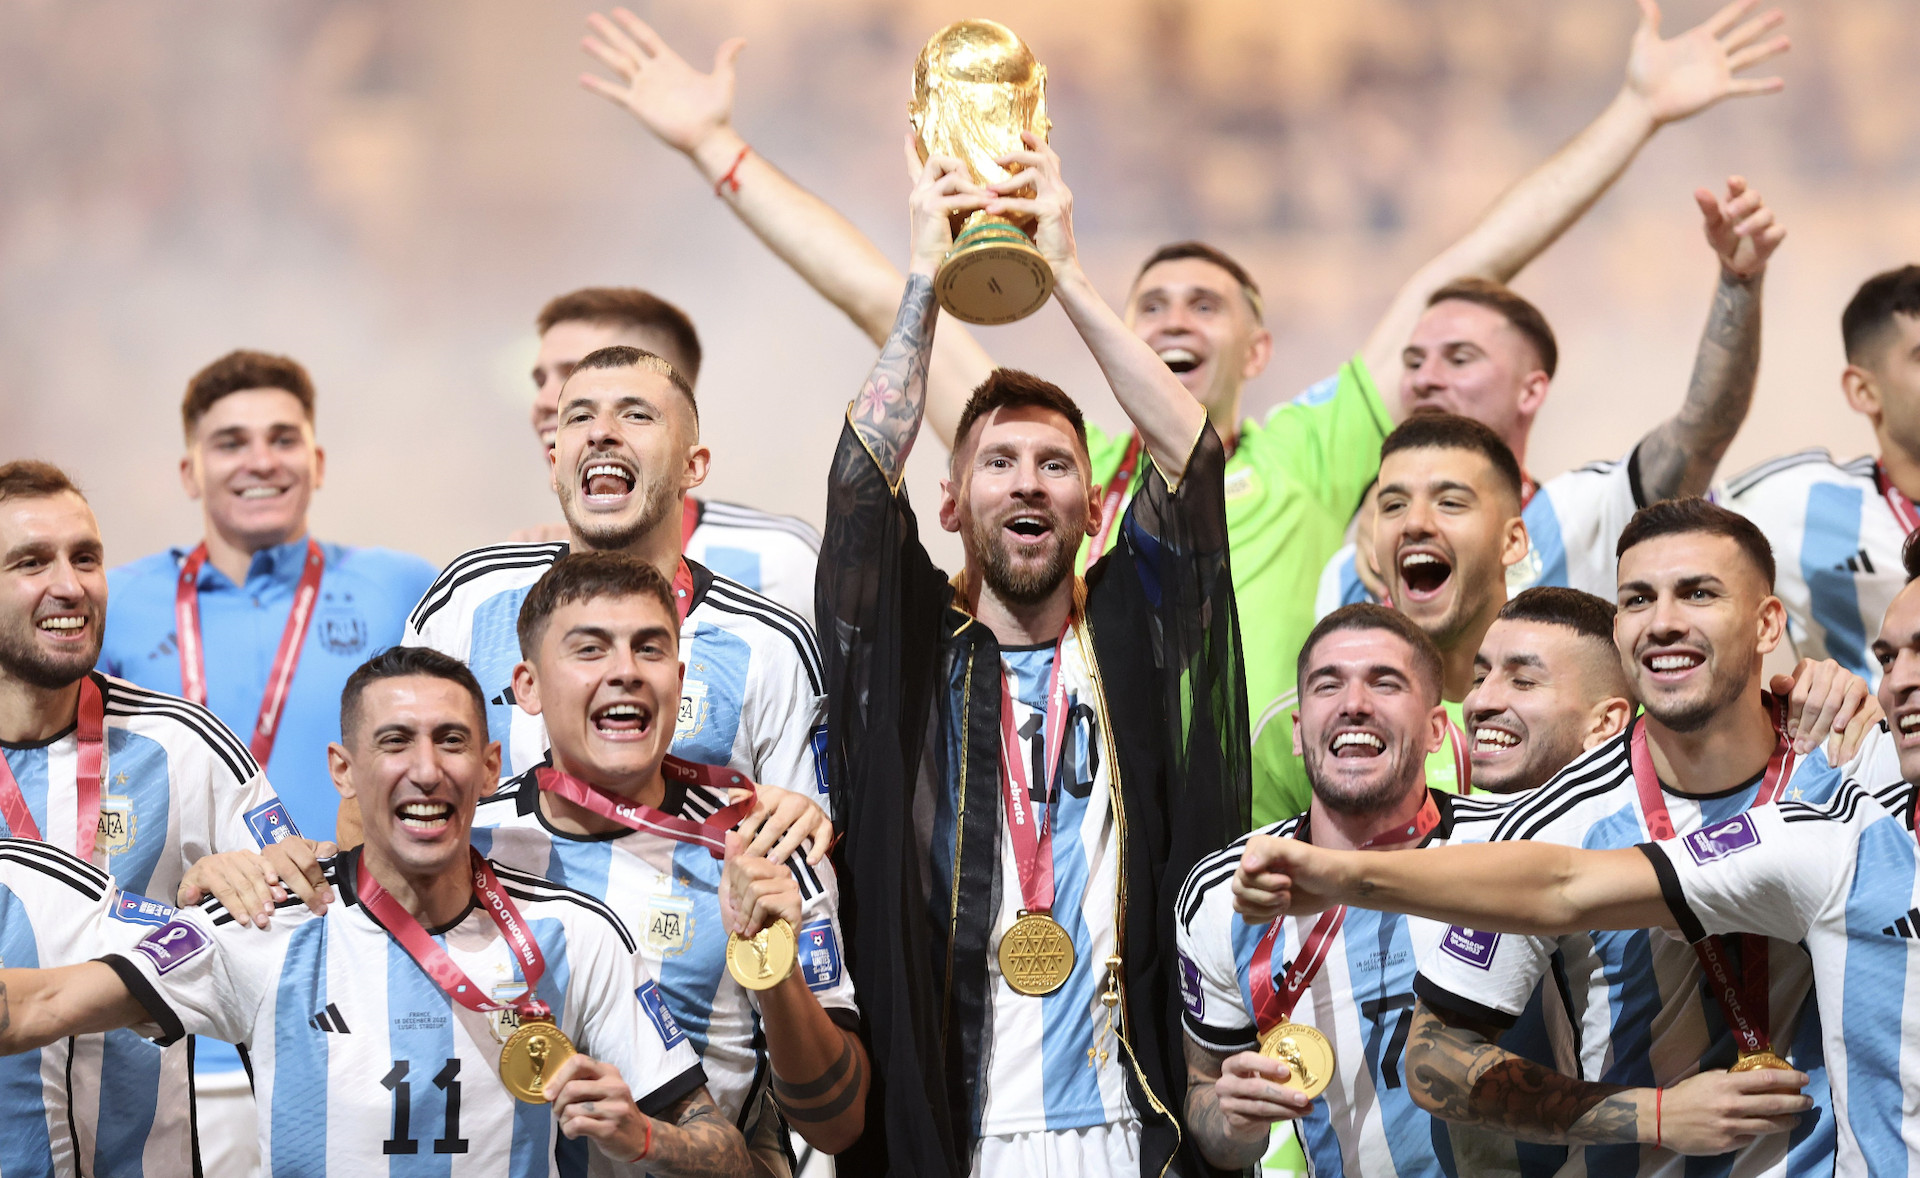 Chung kết World Cup 2022 sẽ là một sự kiện hấp dẫn nhất trong năm và chiến thắng ngoạn mục sẽ thuộc về đội bóng tuyệt vời nào? Xem những hình ảnh và video để đón xem những khoảnh khắc đáng nhớ và cảm nhận sự căng thẳng, phấn khích của trận đấu này.